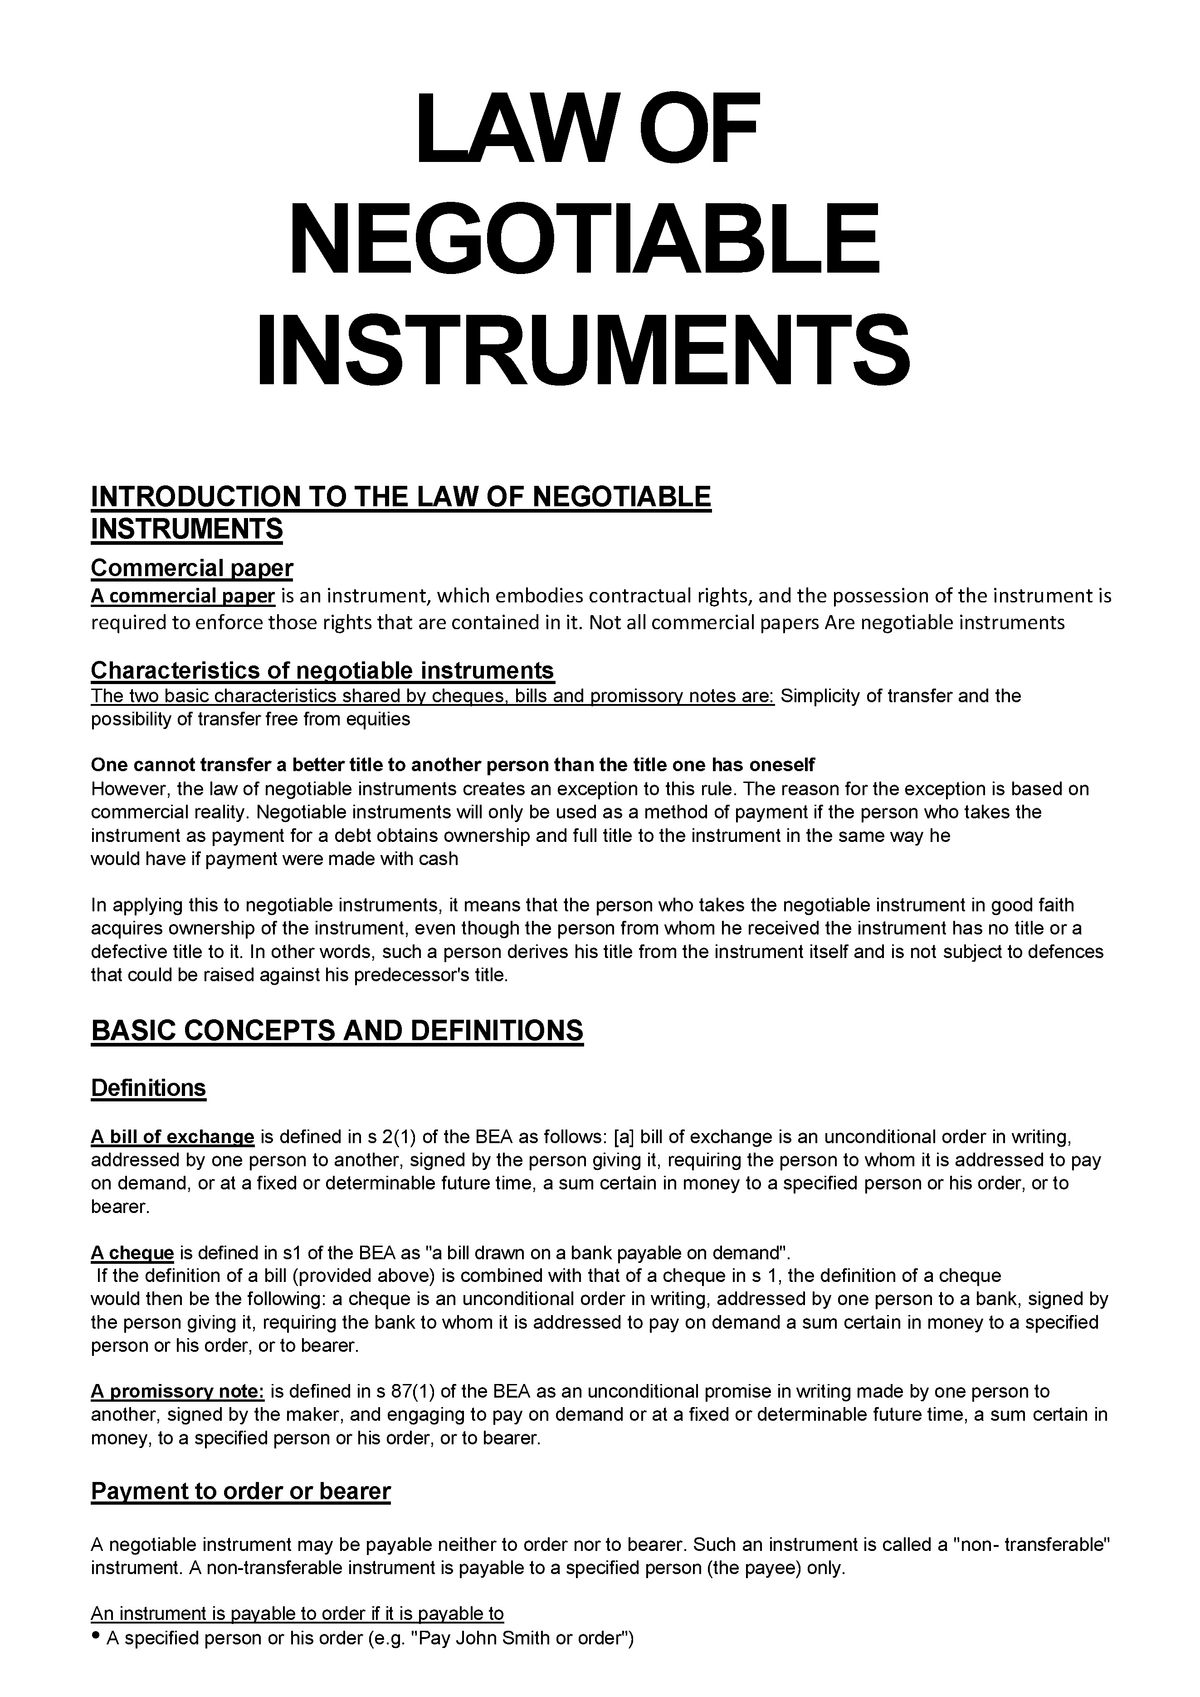 characteristics of negotiable instrument